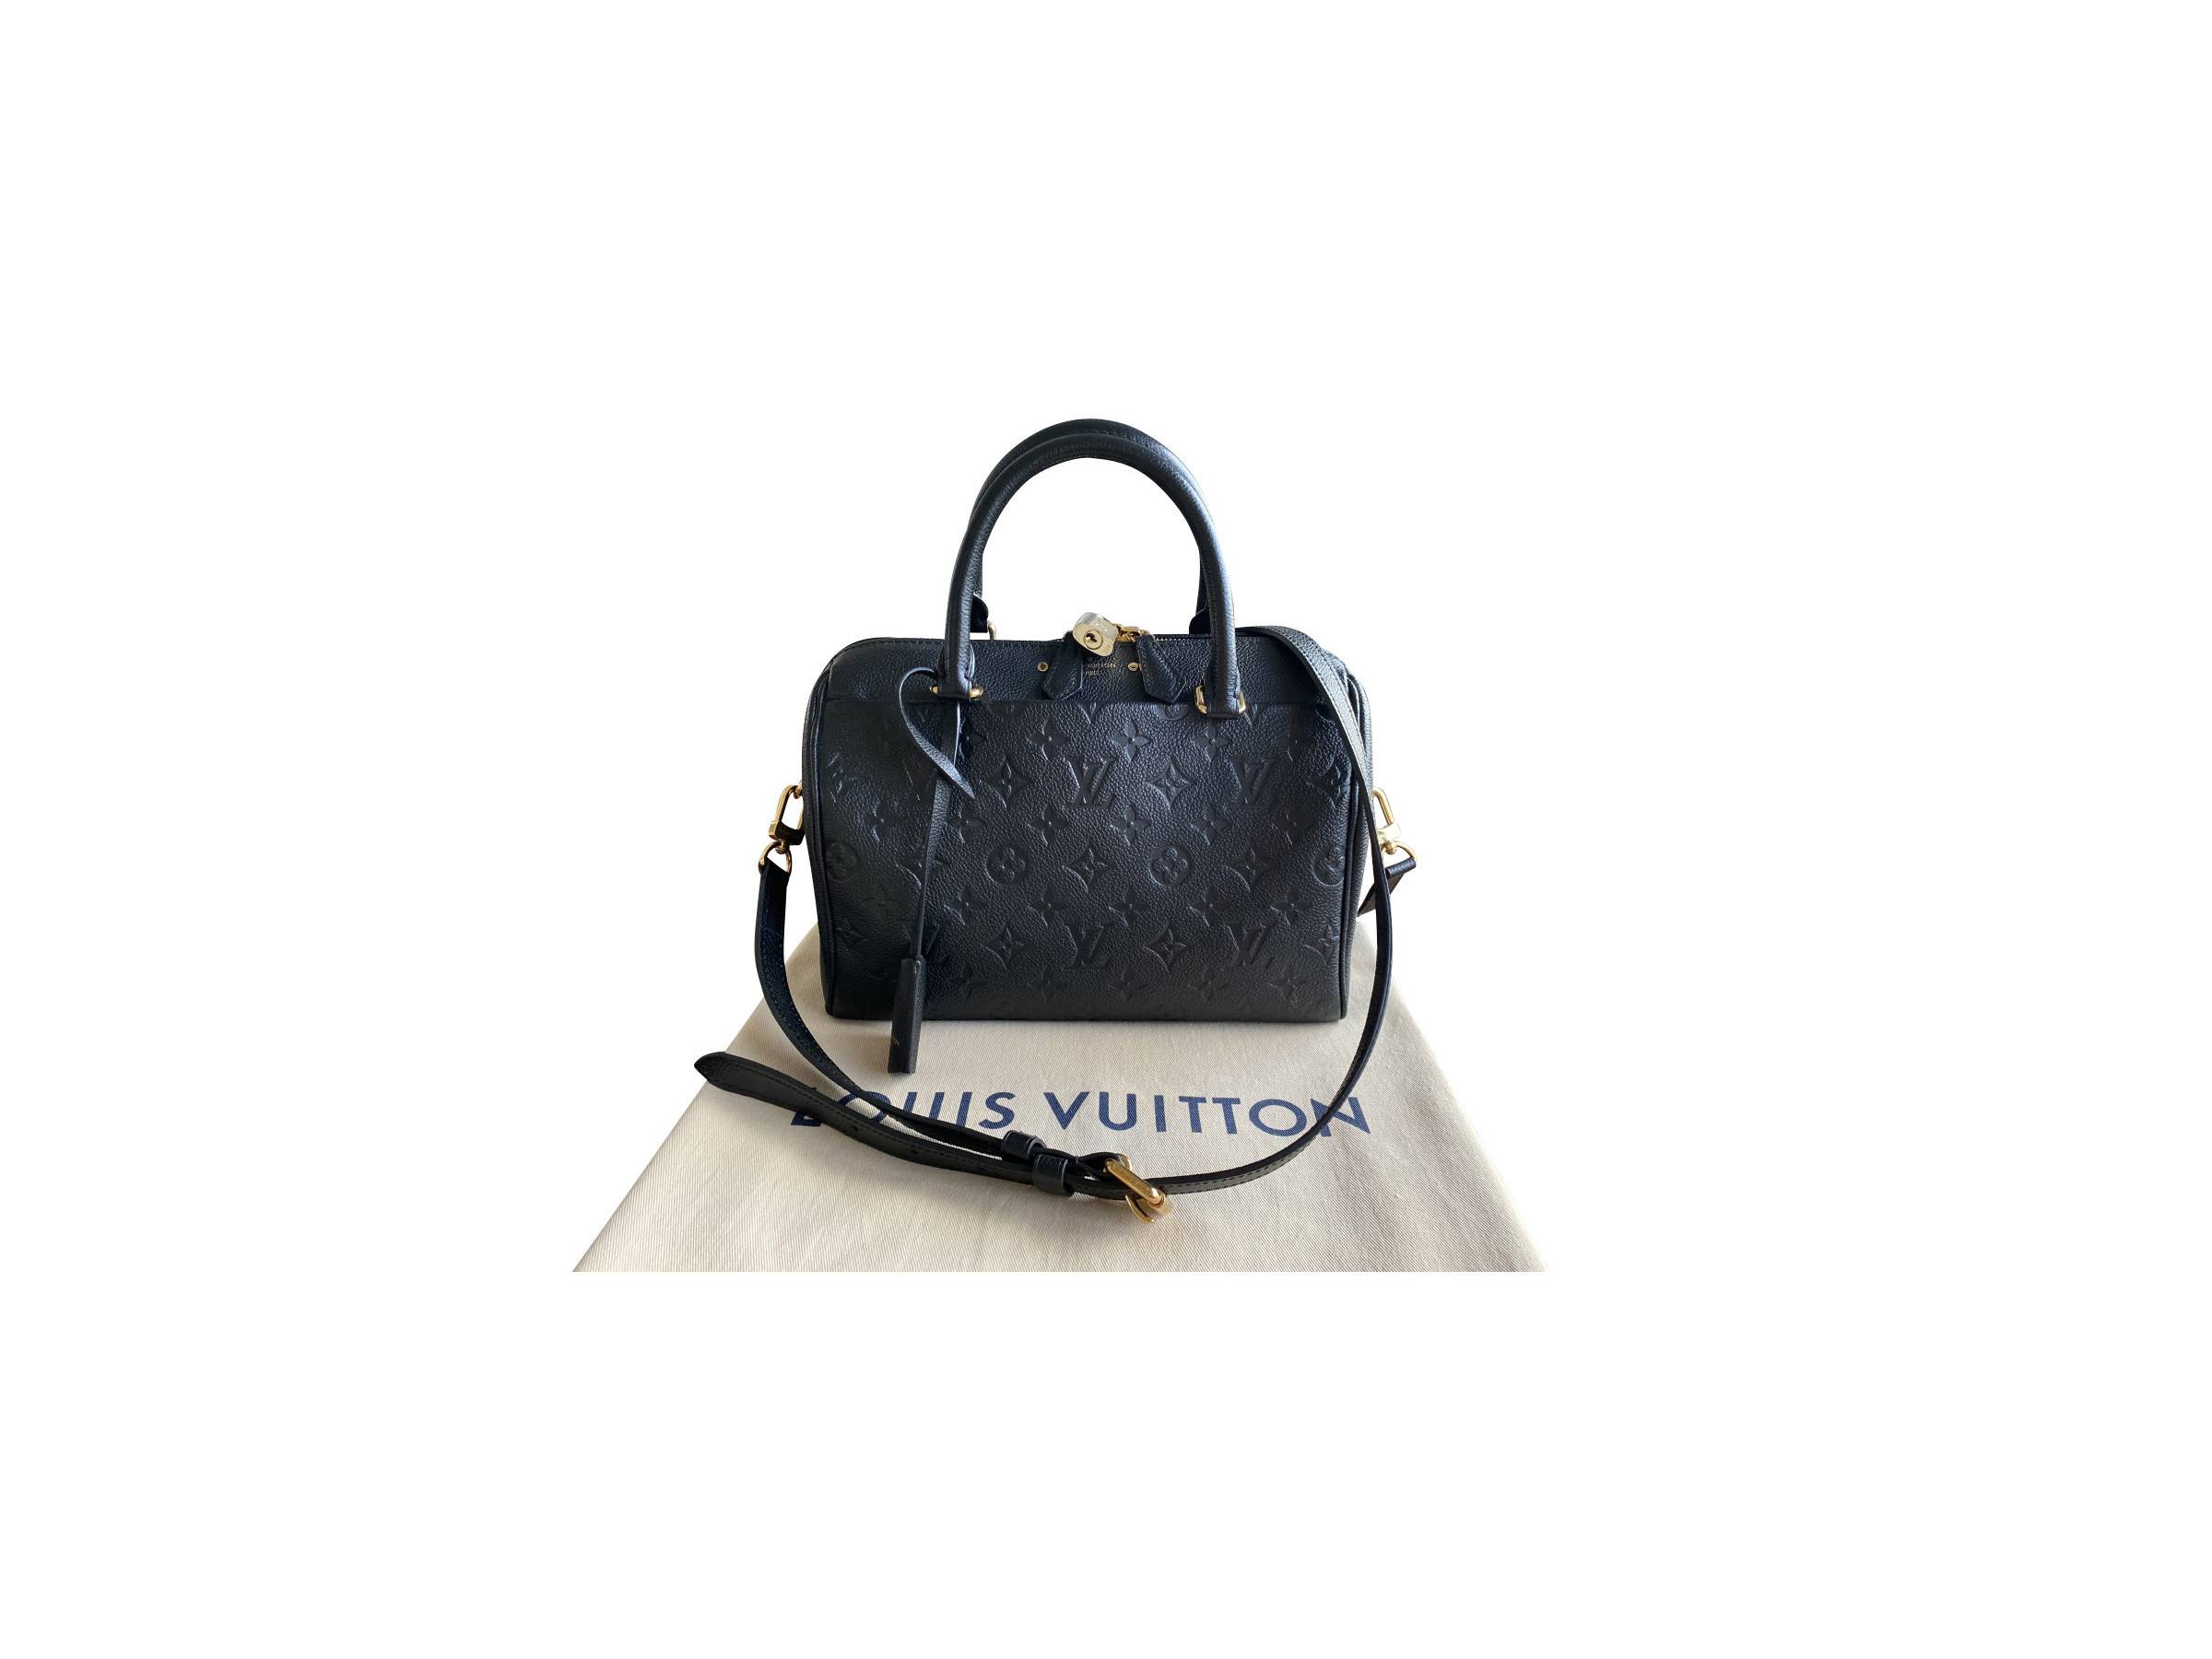 VERKAUFT - Louis Vuitton Tasche M59273 Speedy 25 Monogram